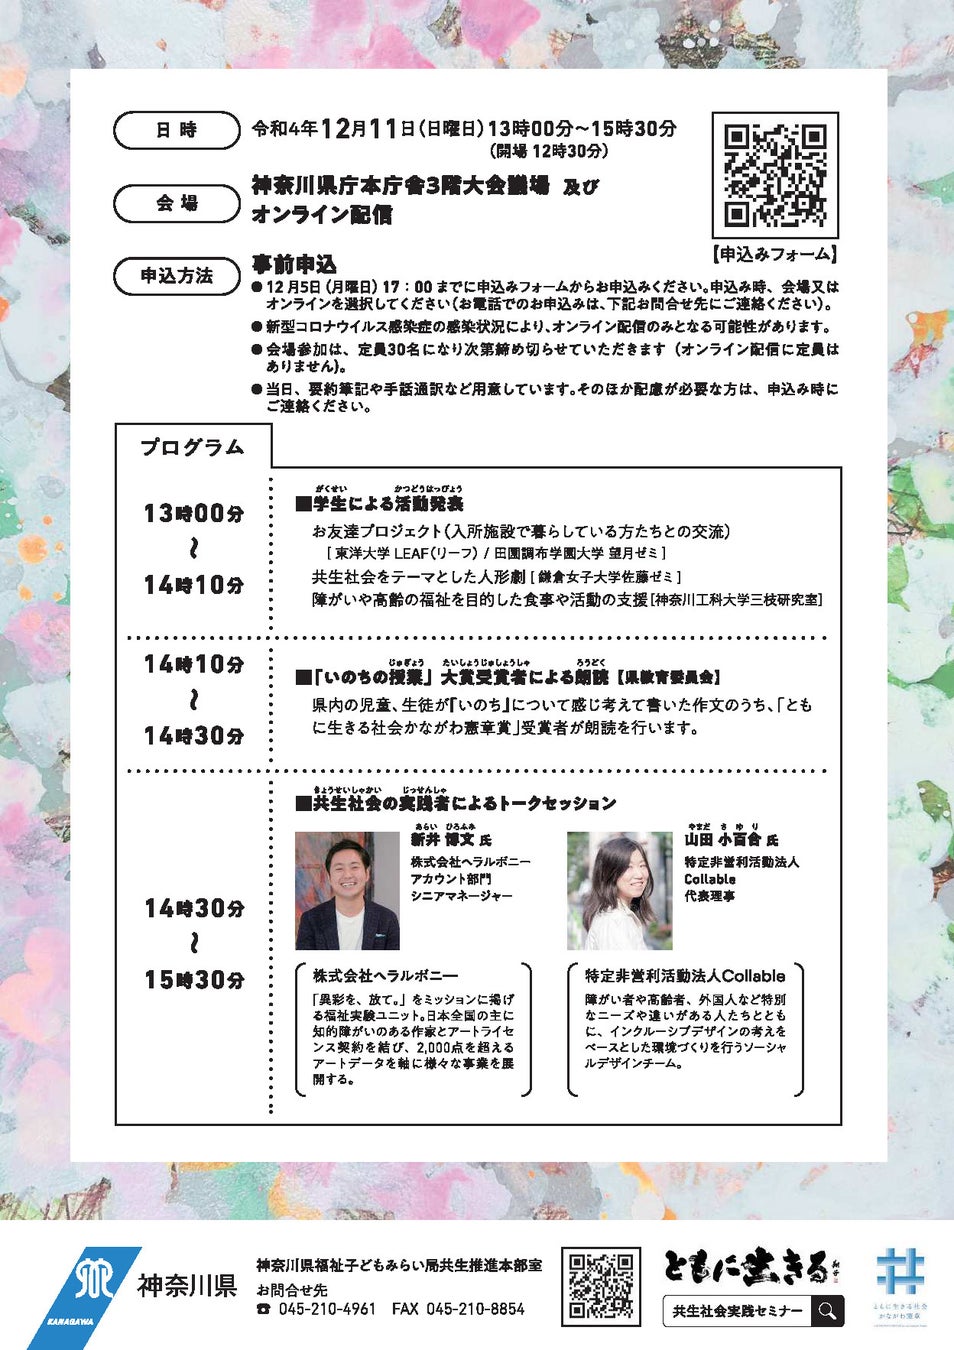 神奈川県 共生社会実践セミナーのサブ画像9